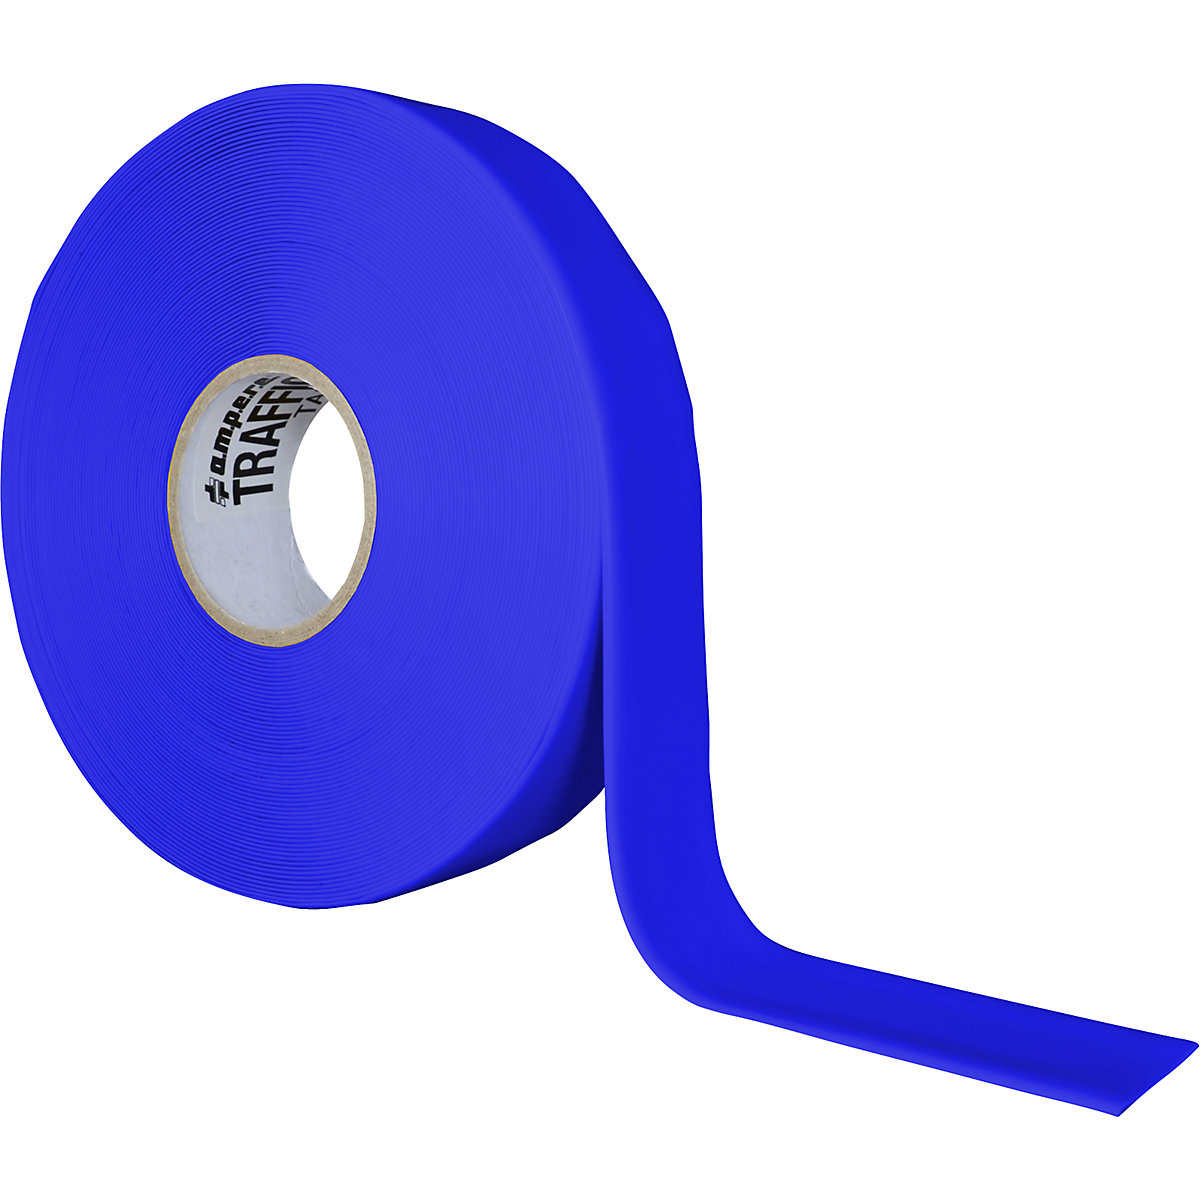 Nastro per marcatura a terra, extra resistente – Ampere, larghezza 50 mm, blu-7